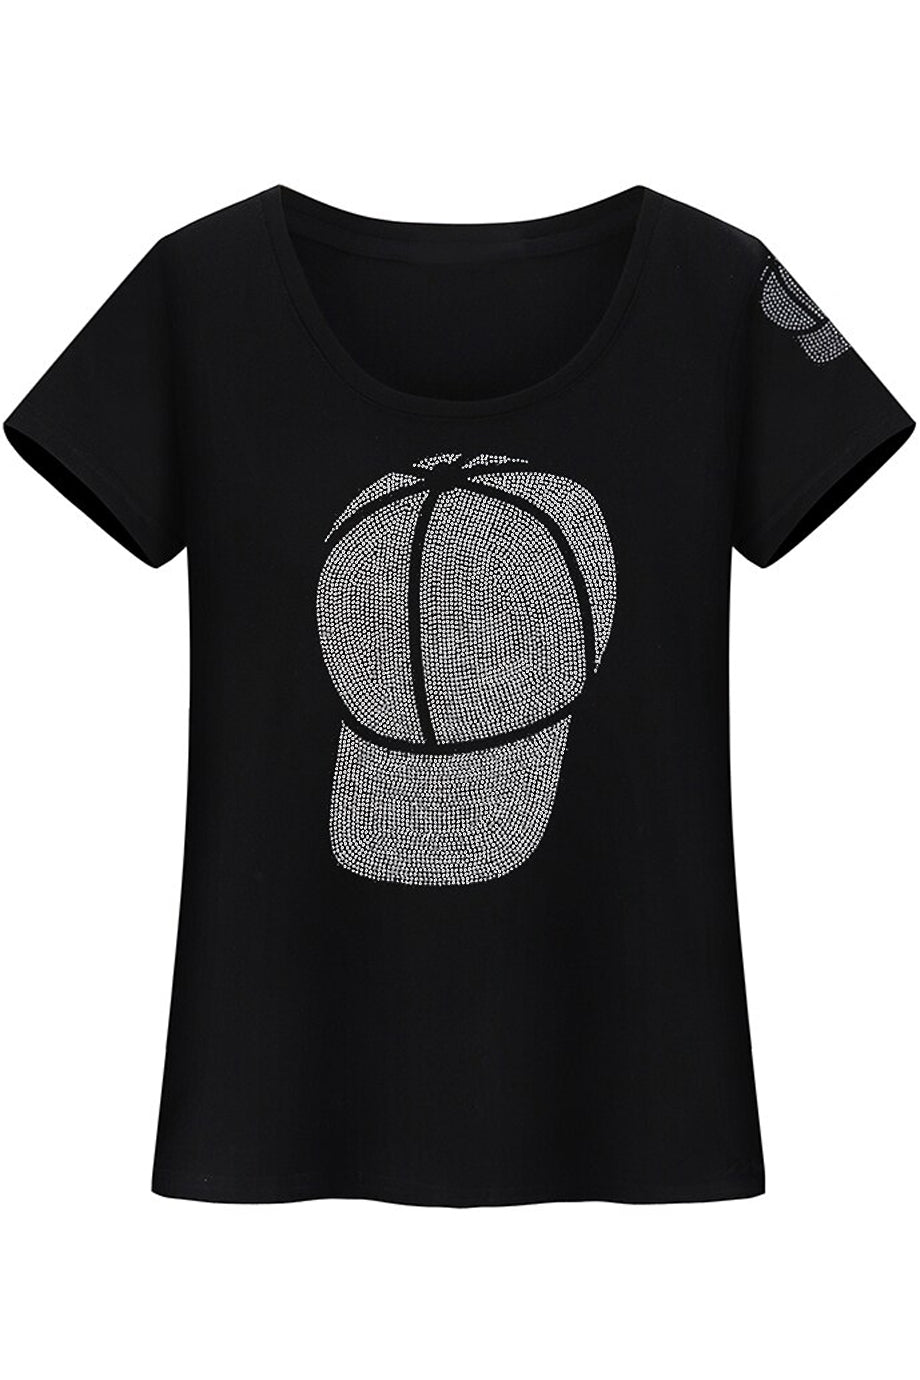 Μαύρο Μπλουζάκι με Κρύσταλλα | Γυναικεία Ρούχα T-Shirts - Estelle